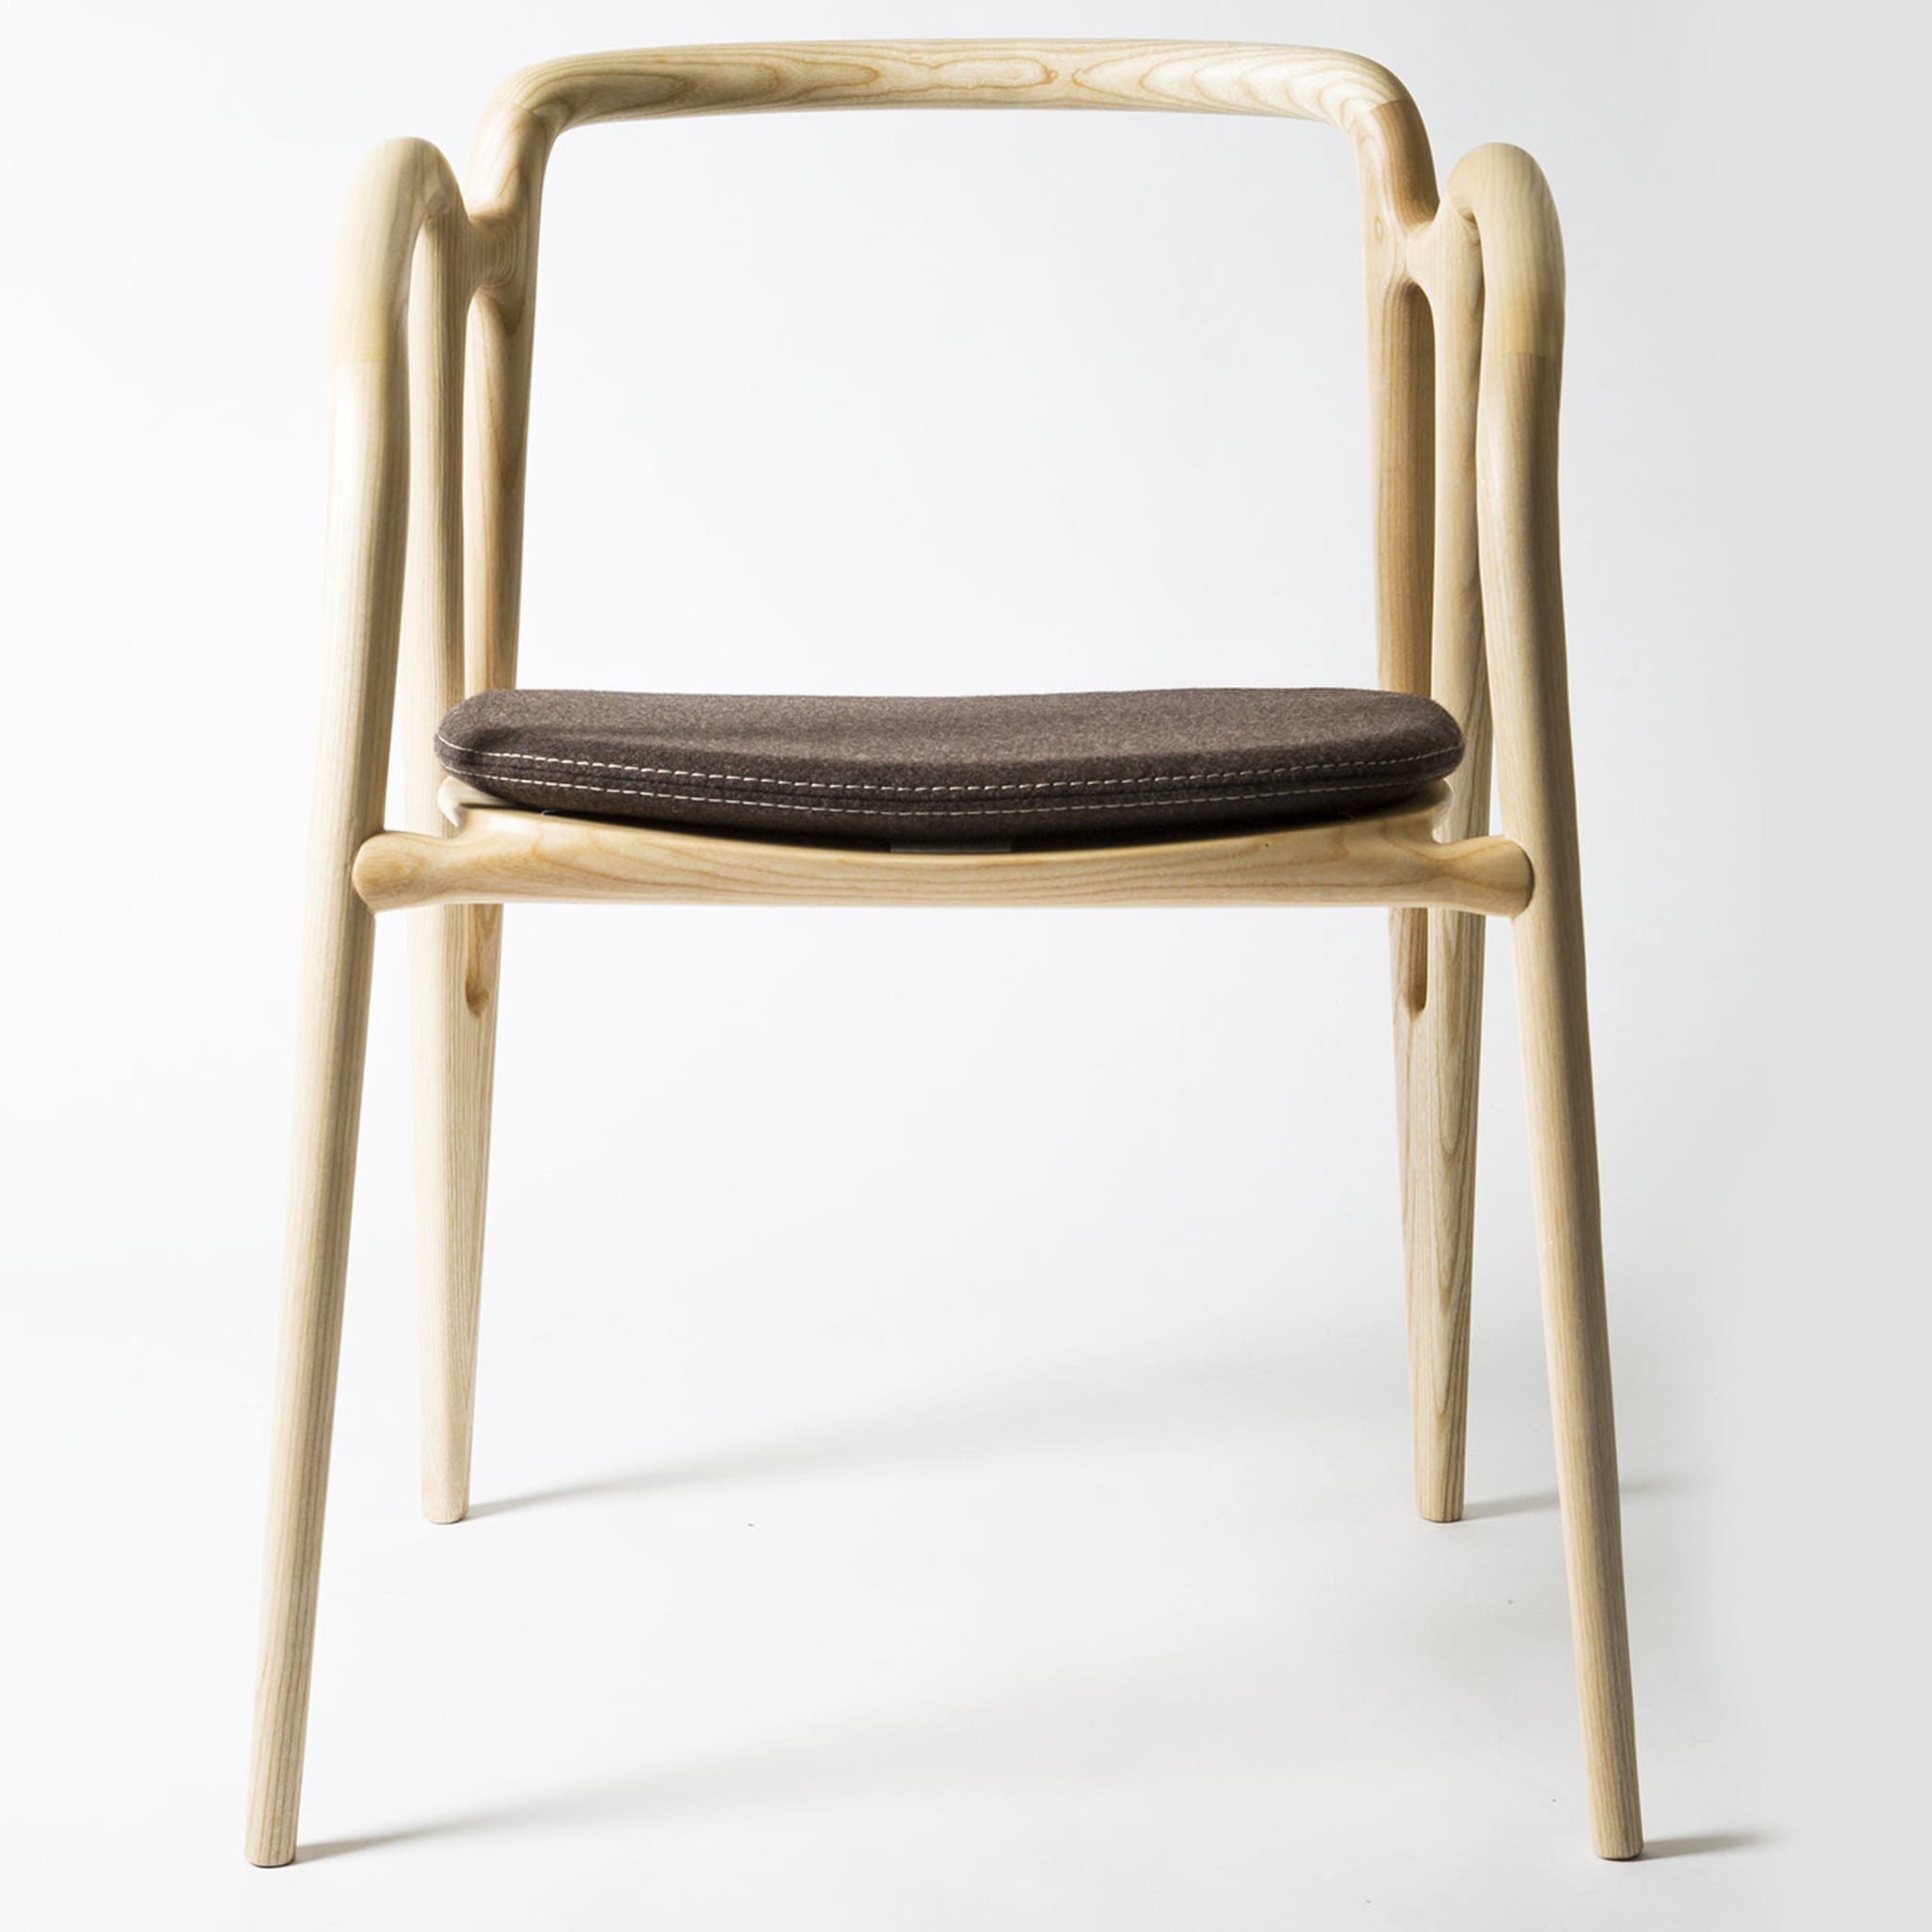 Vivo Chair with Brown Cushion - Alternative view 1